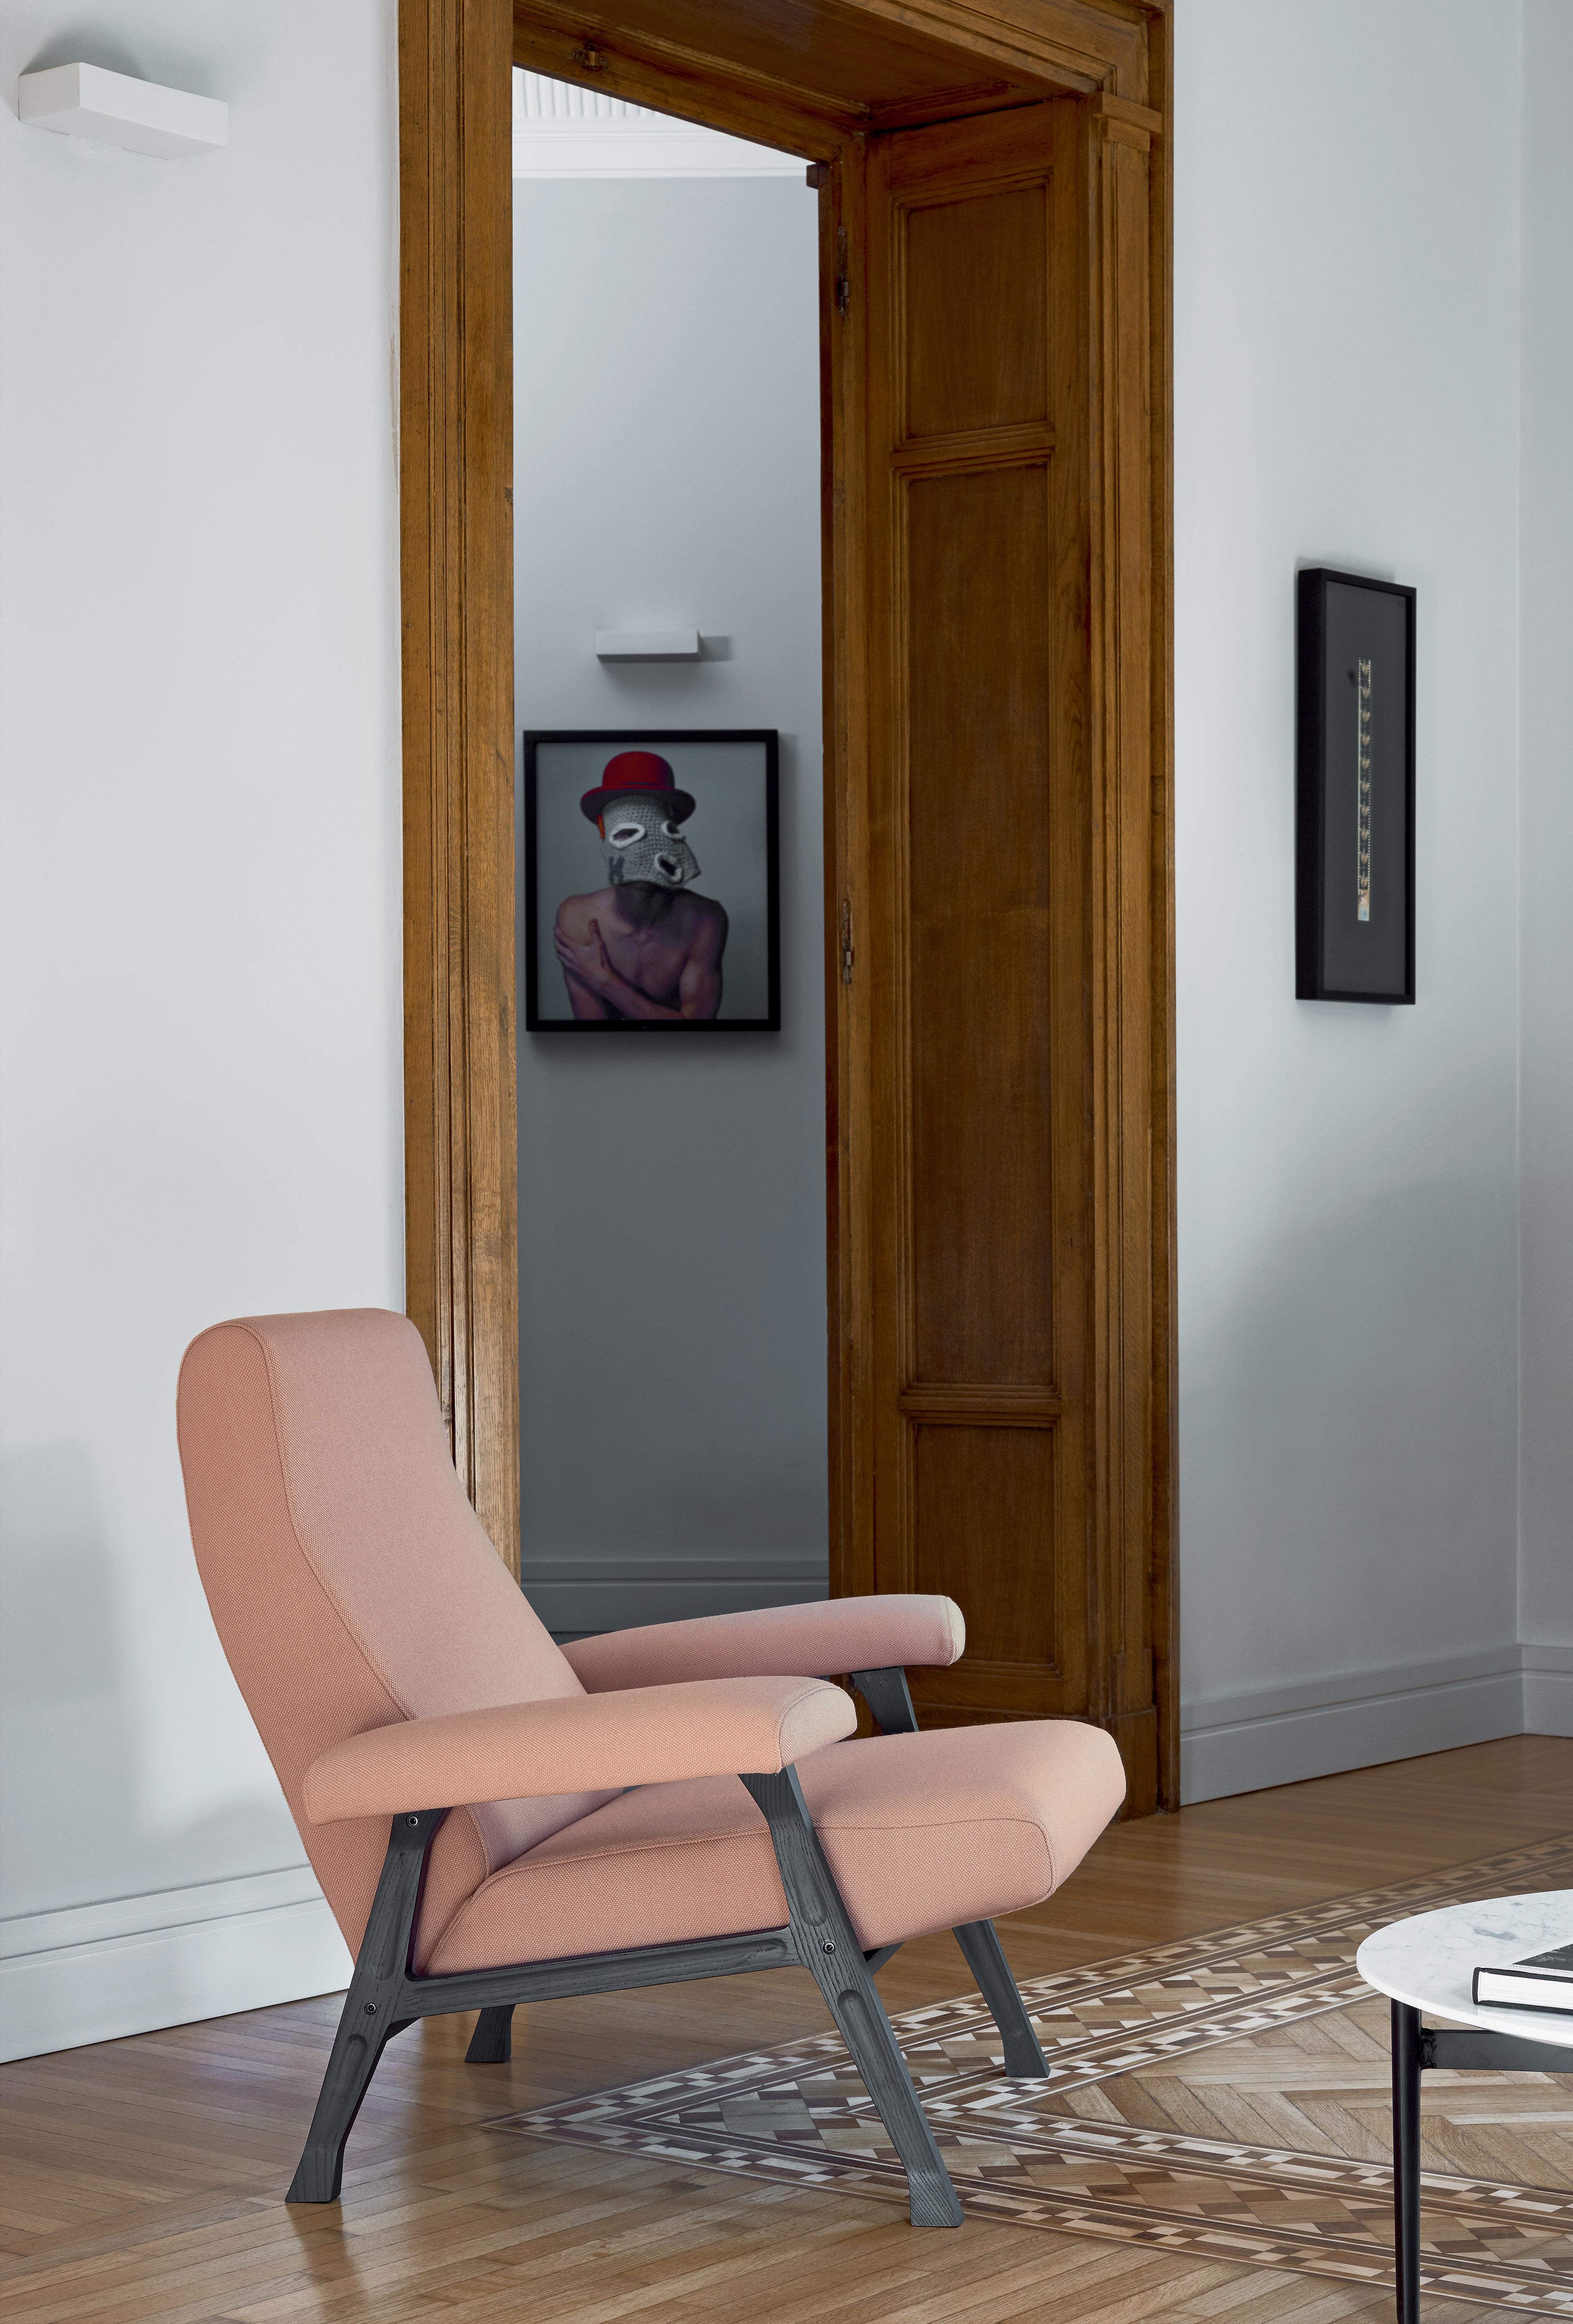 Nous sommes à la fin des années 50 : une intéressante série de fauteuils et de sofas, conçue par Roberto Menghi et appelée Hall, rejoint la collection Arflex. Le fauteuil Hall reçoit en 1959 la mention honorable du Compasso d'Oro. Nous sommes à la